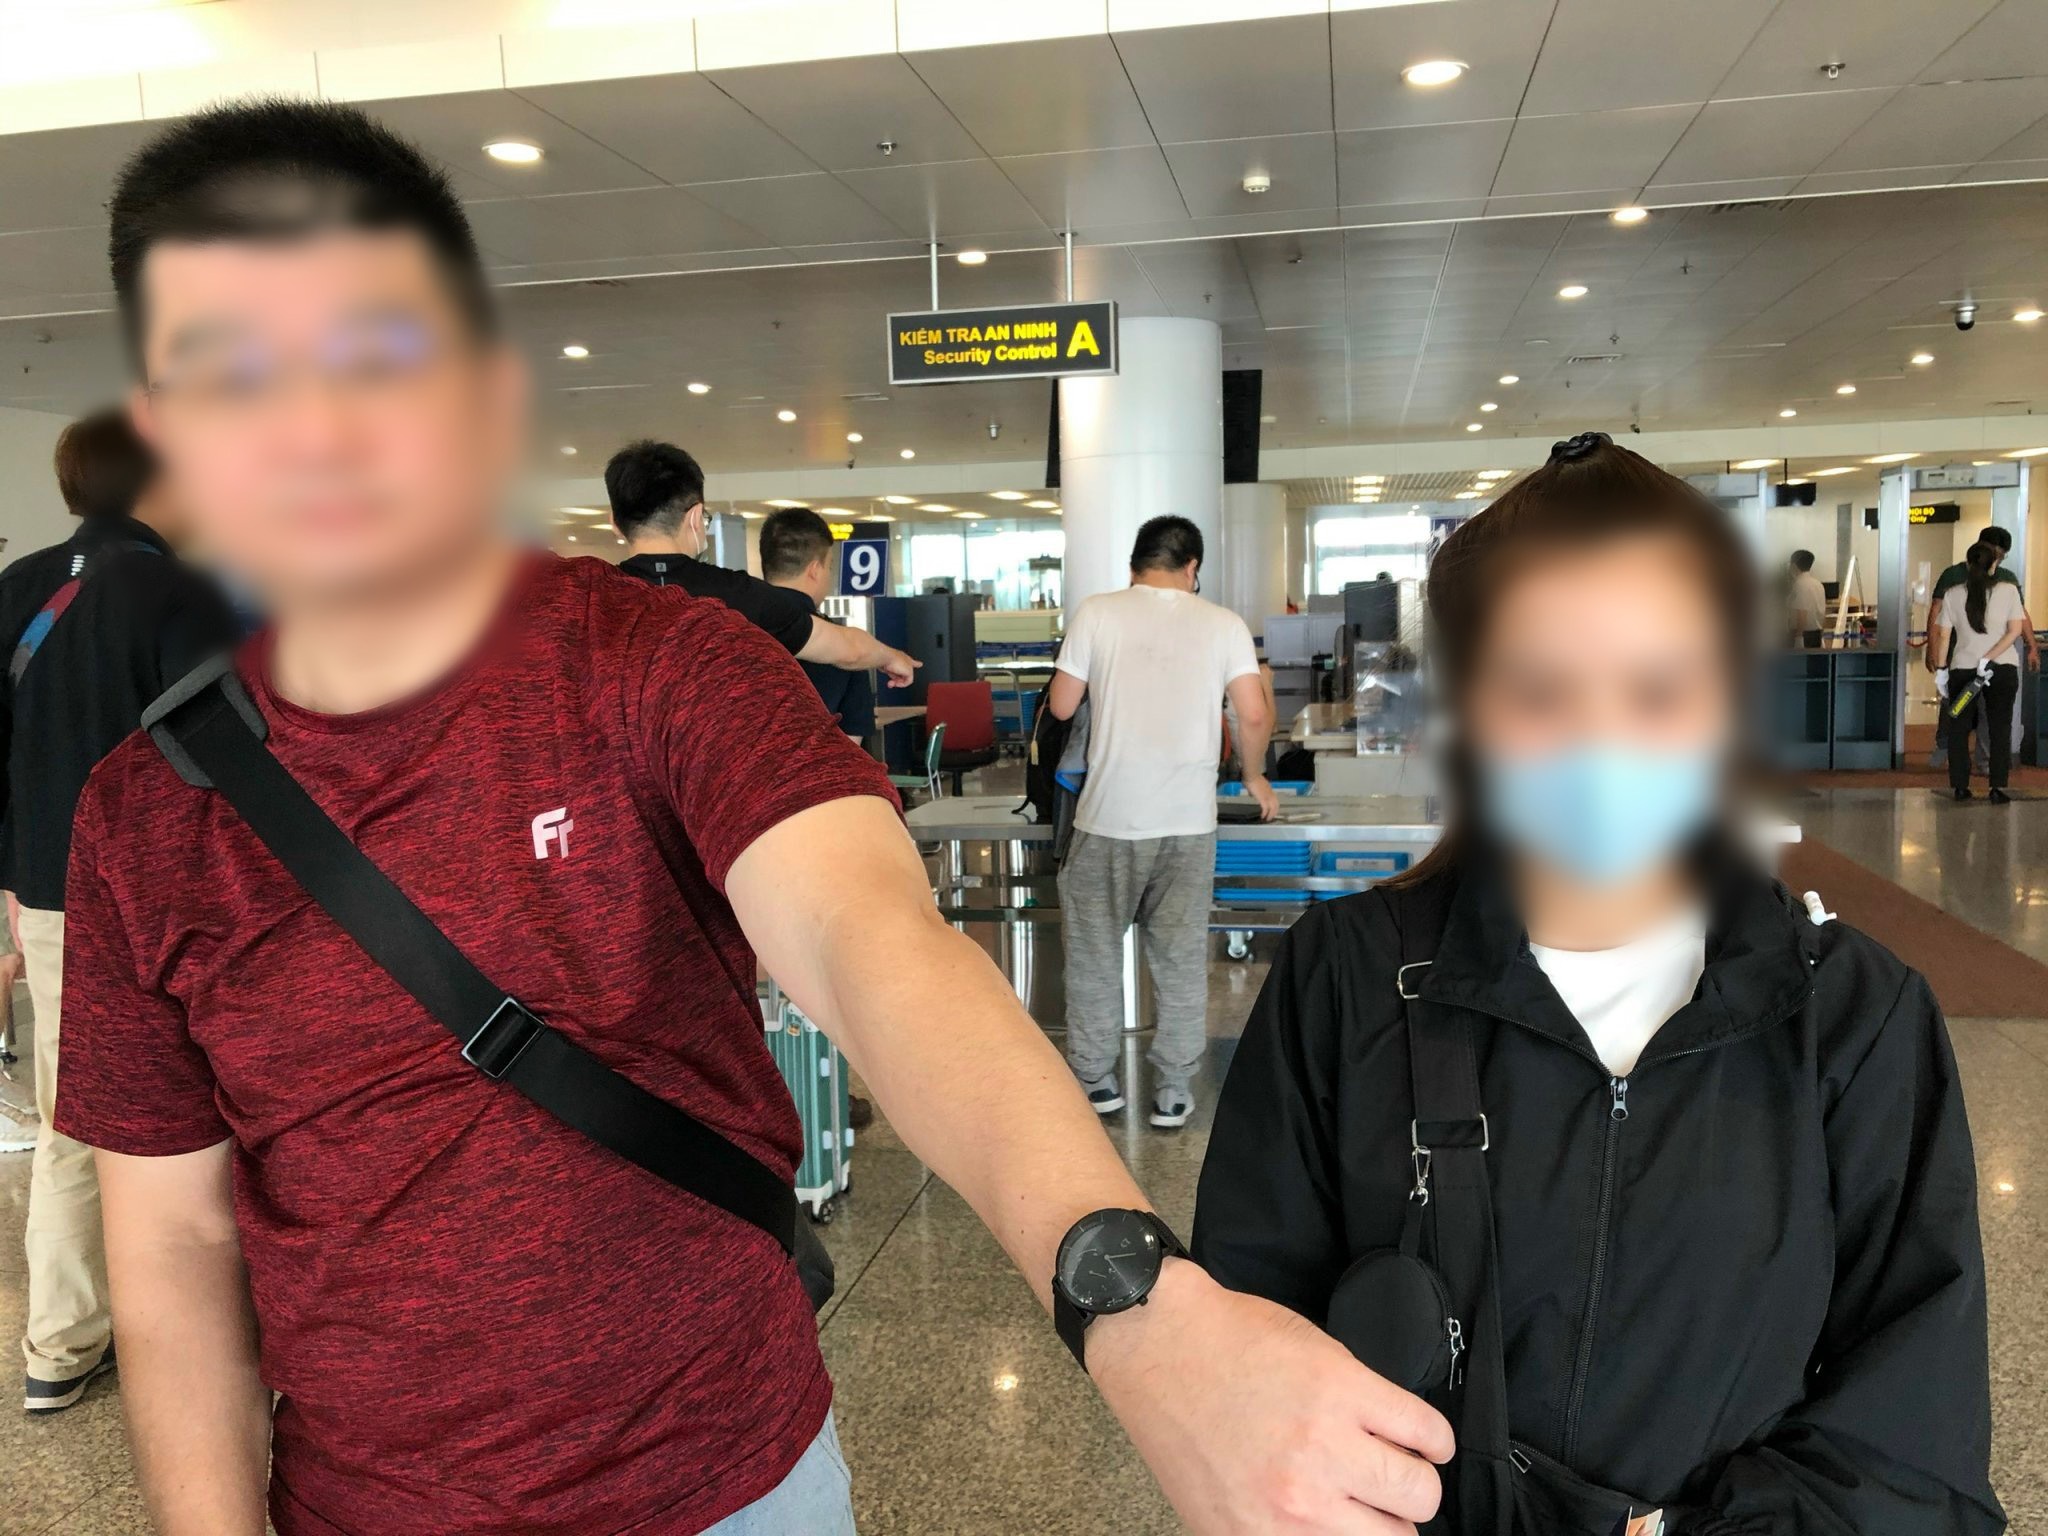 Nữ khách Việt cầm nhầm đồng hồ, sân bay yêu cầu trả lại - 1